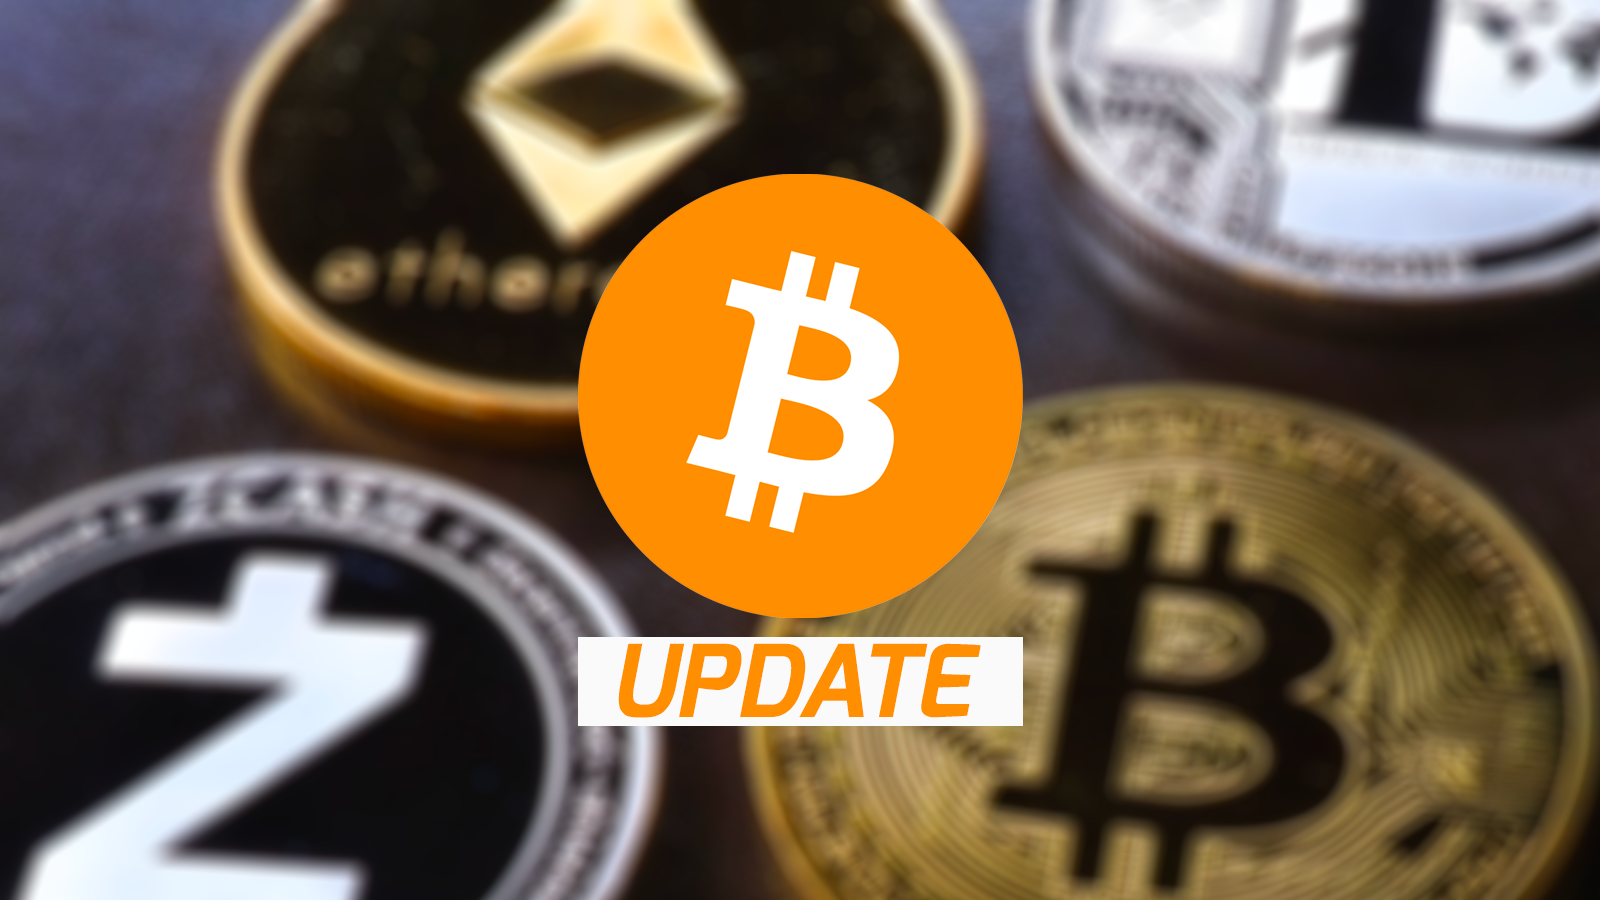 Bitcoin update prijs BTC en crypto stijgt Opties trend key